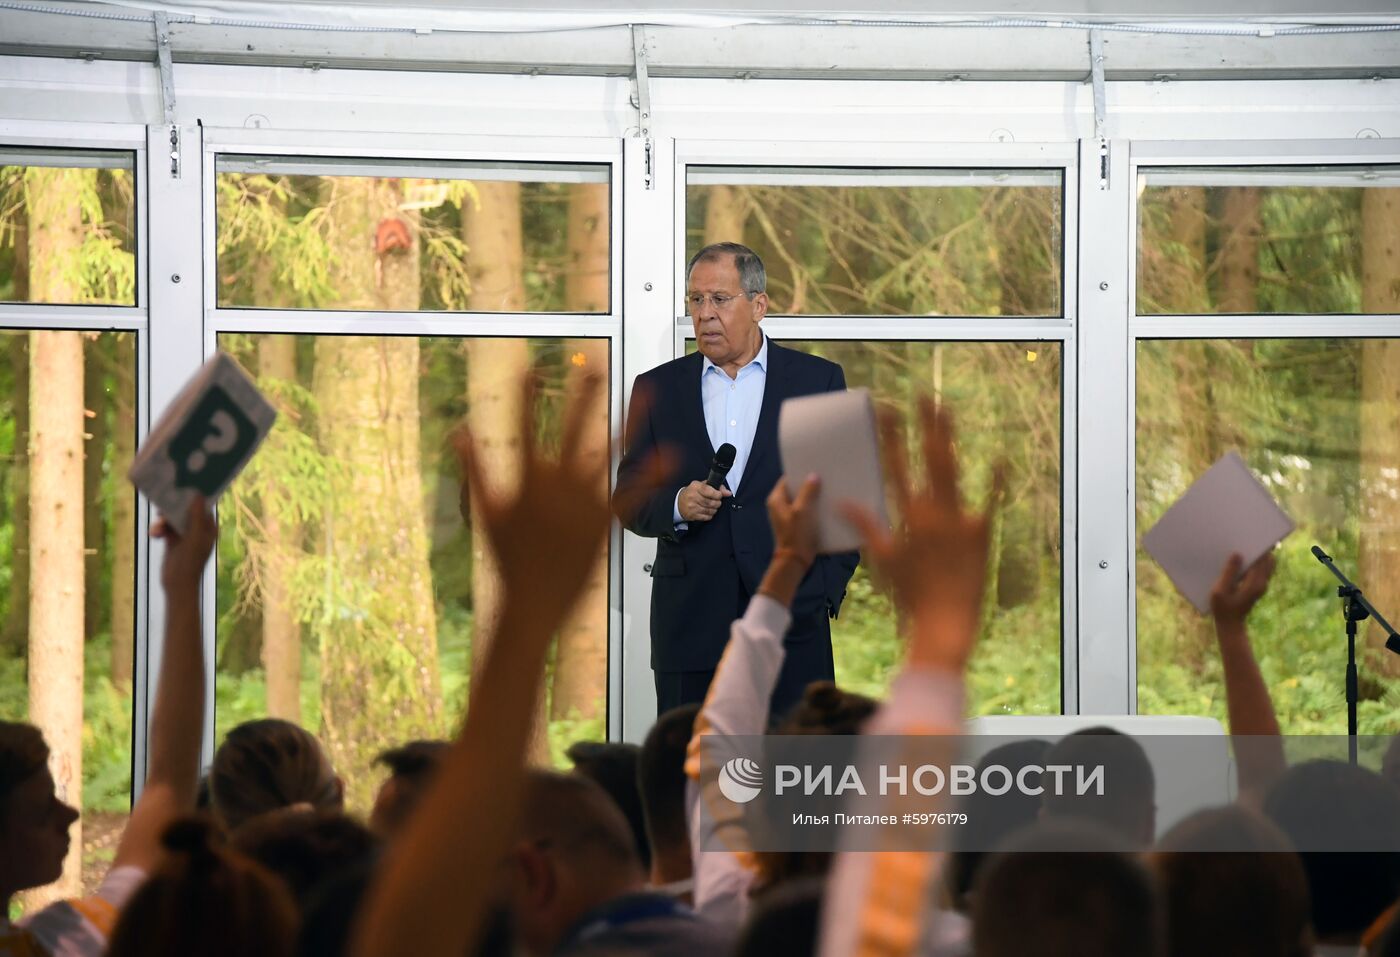 Глава МИД РФ С. Лавров посетил форум "Территория смыслов" 